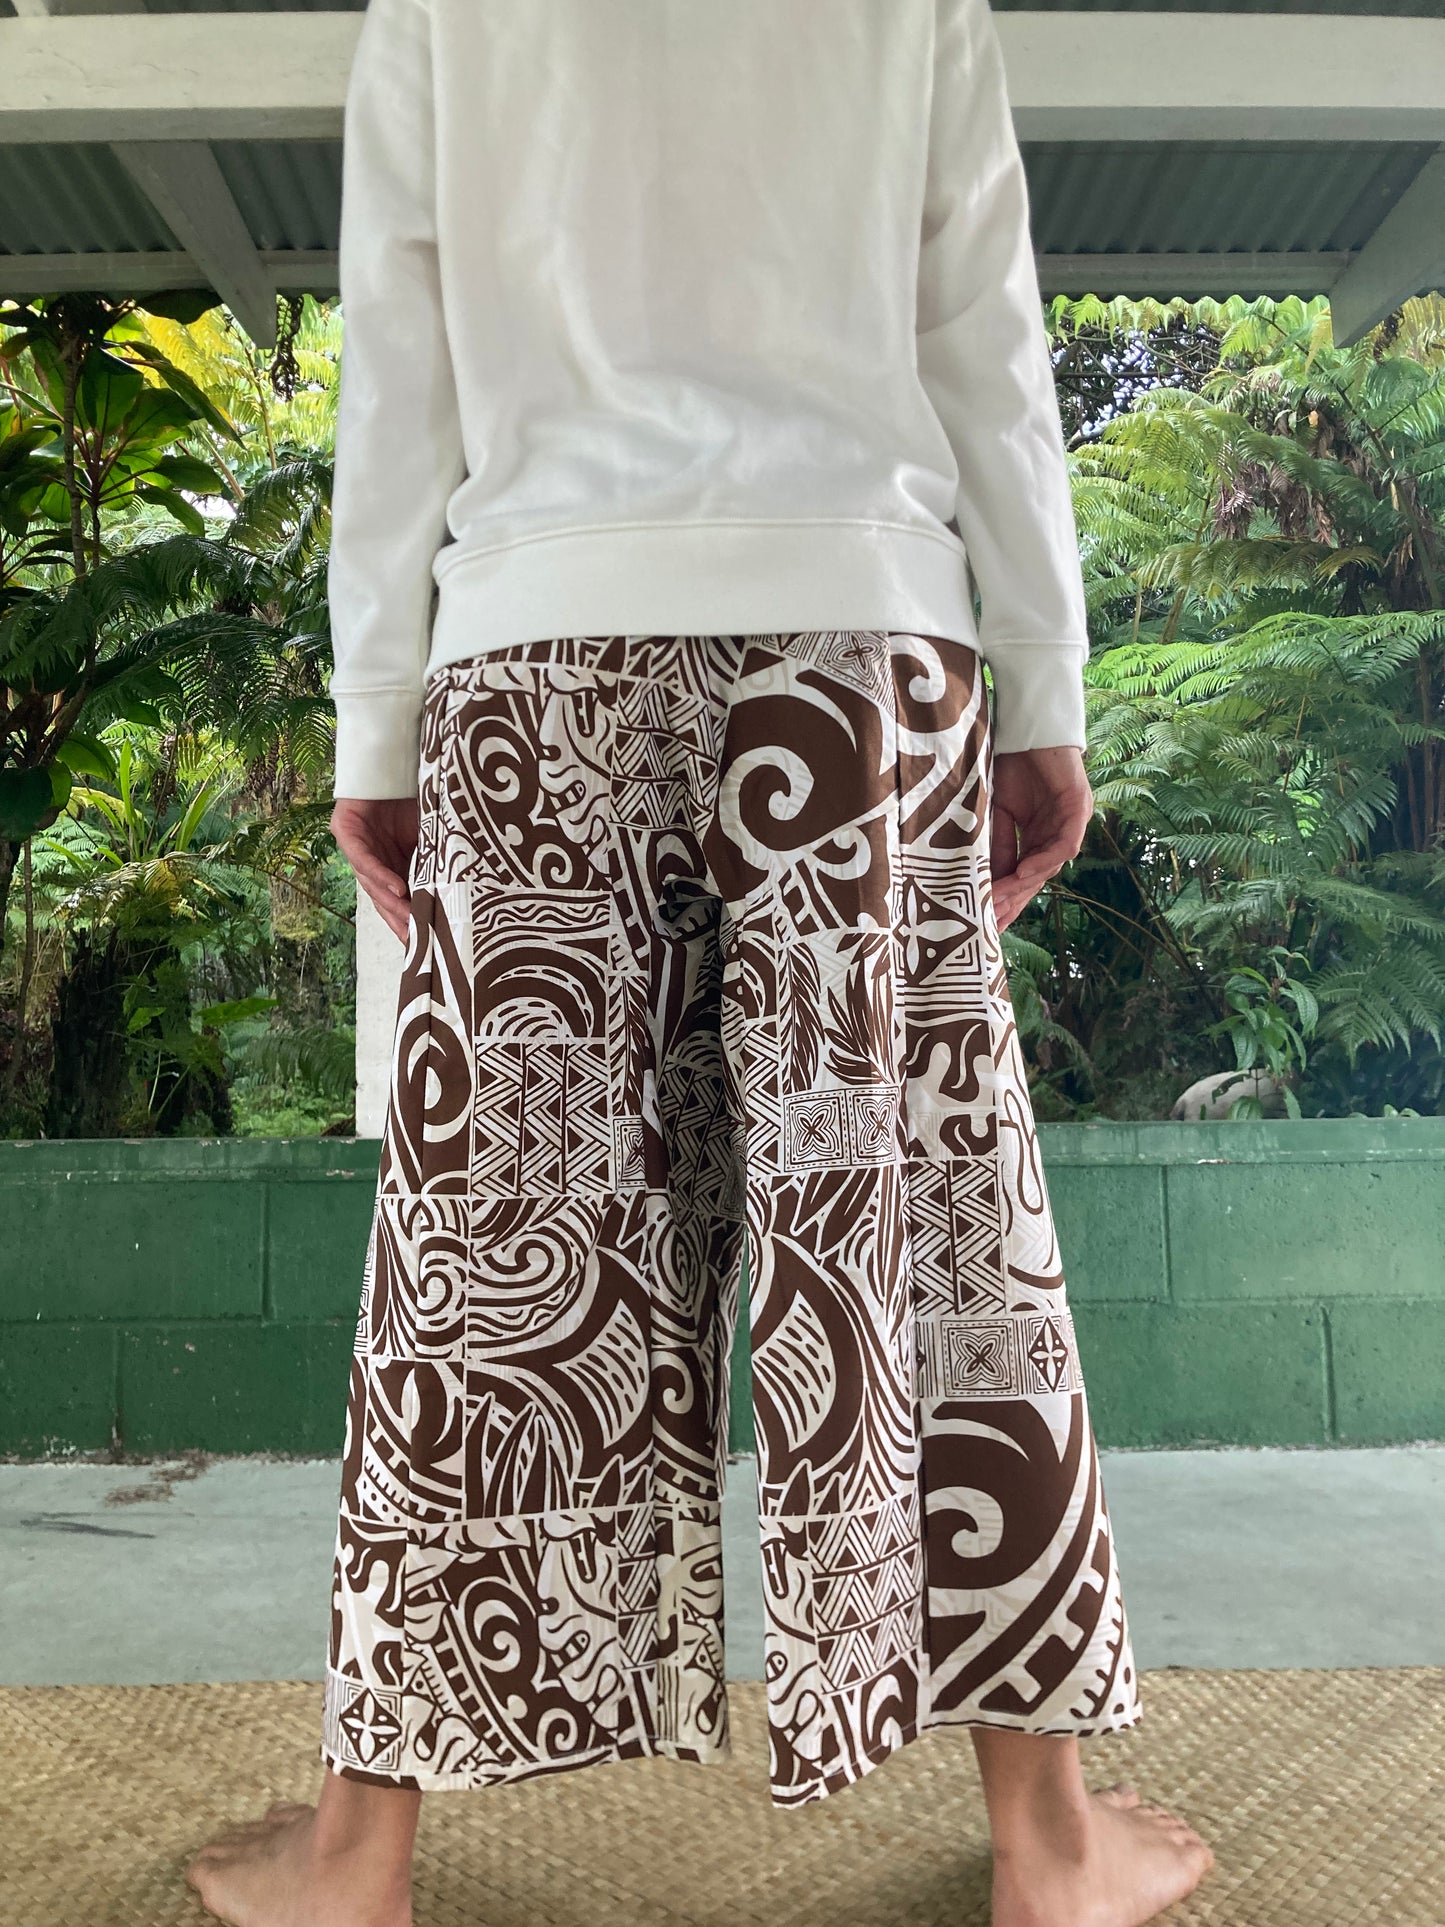 Hawaiian Pants・Brown Tapa /Cotton 100%